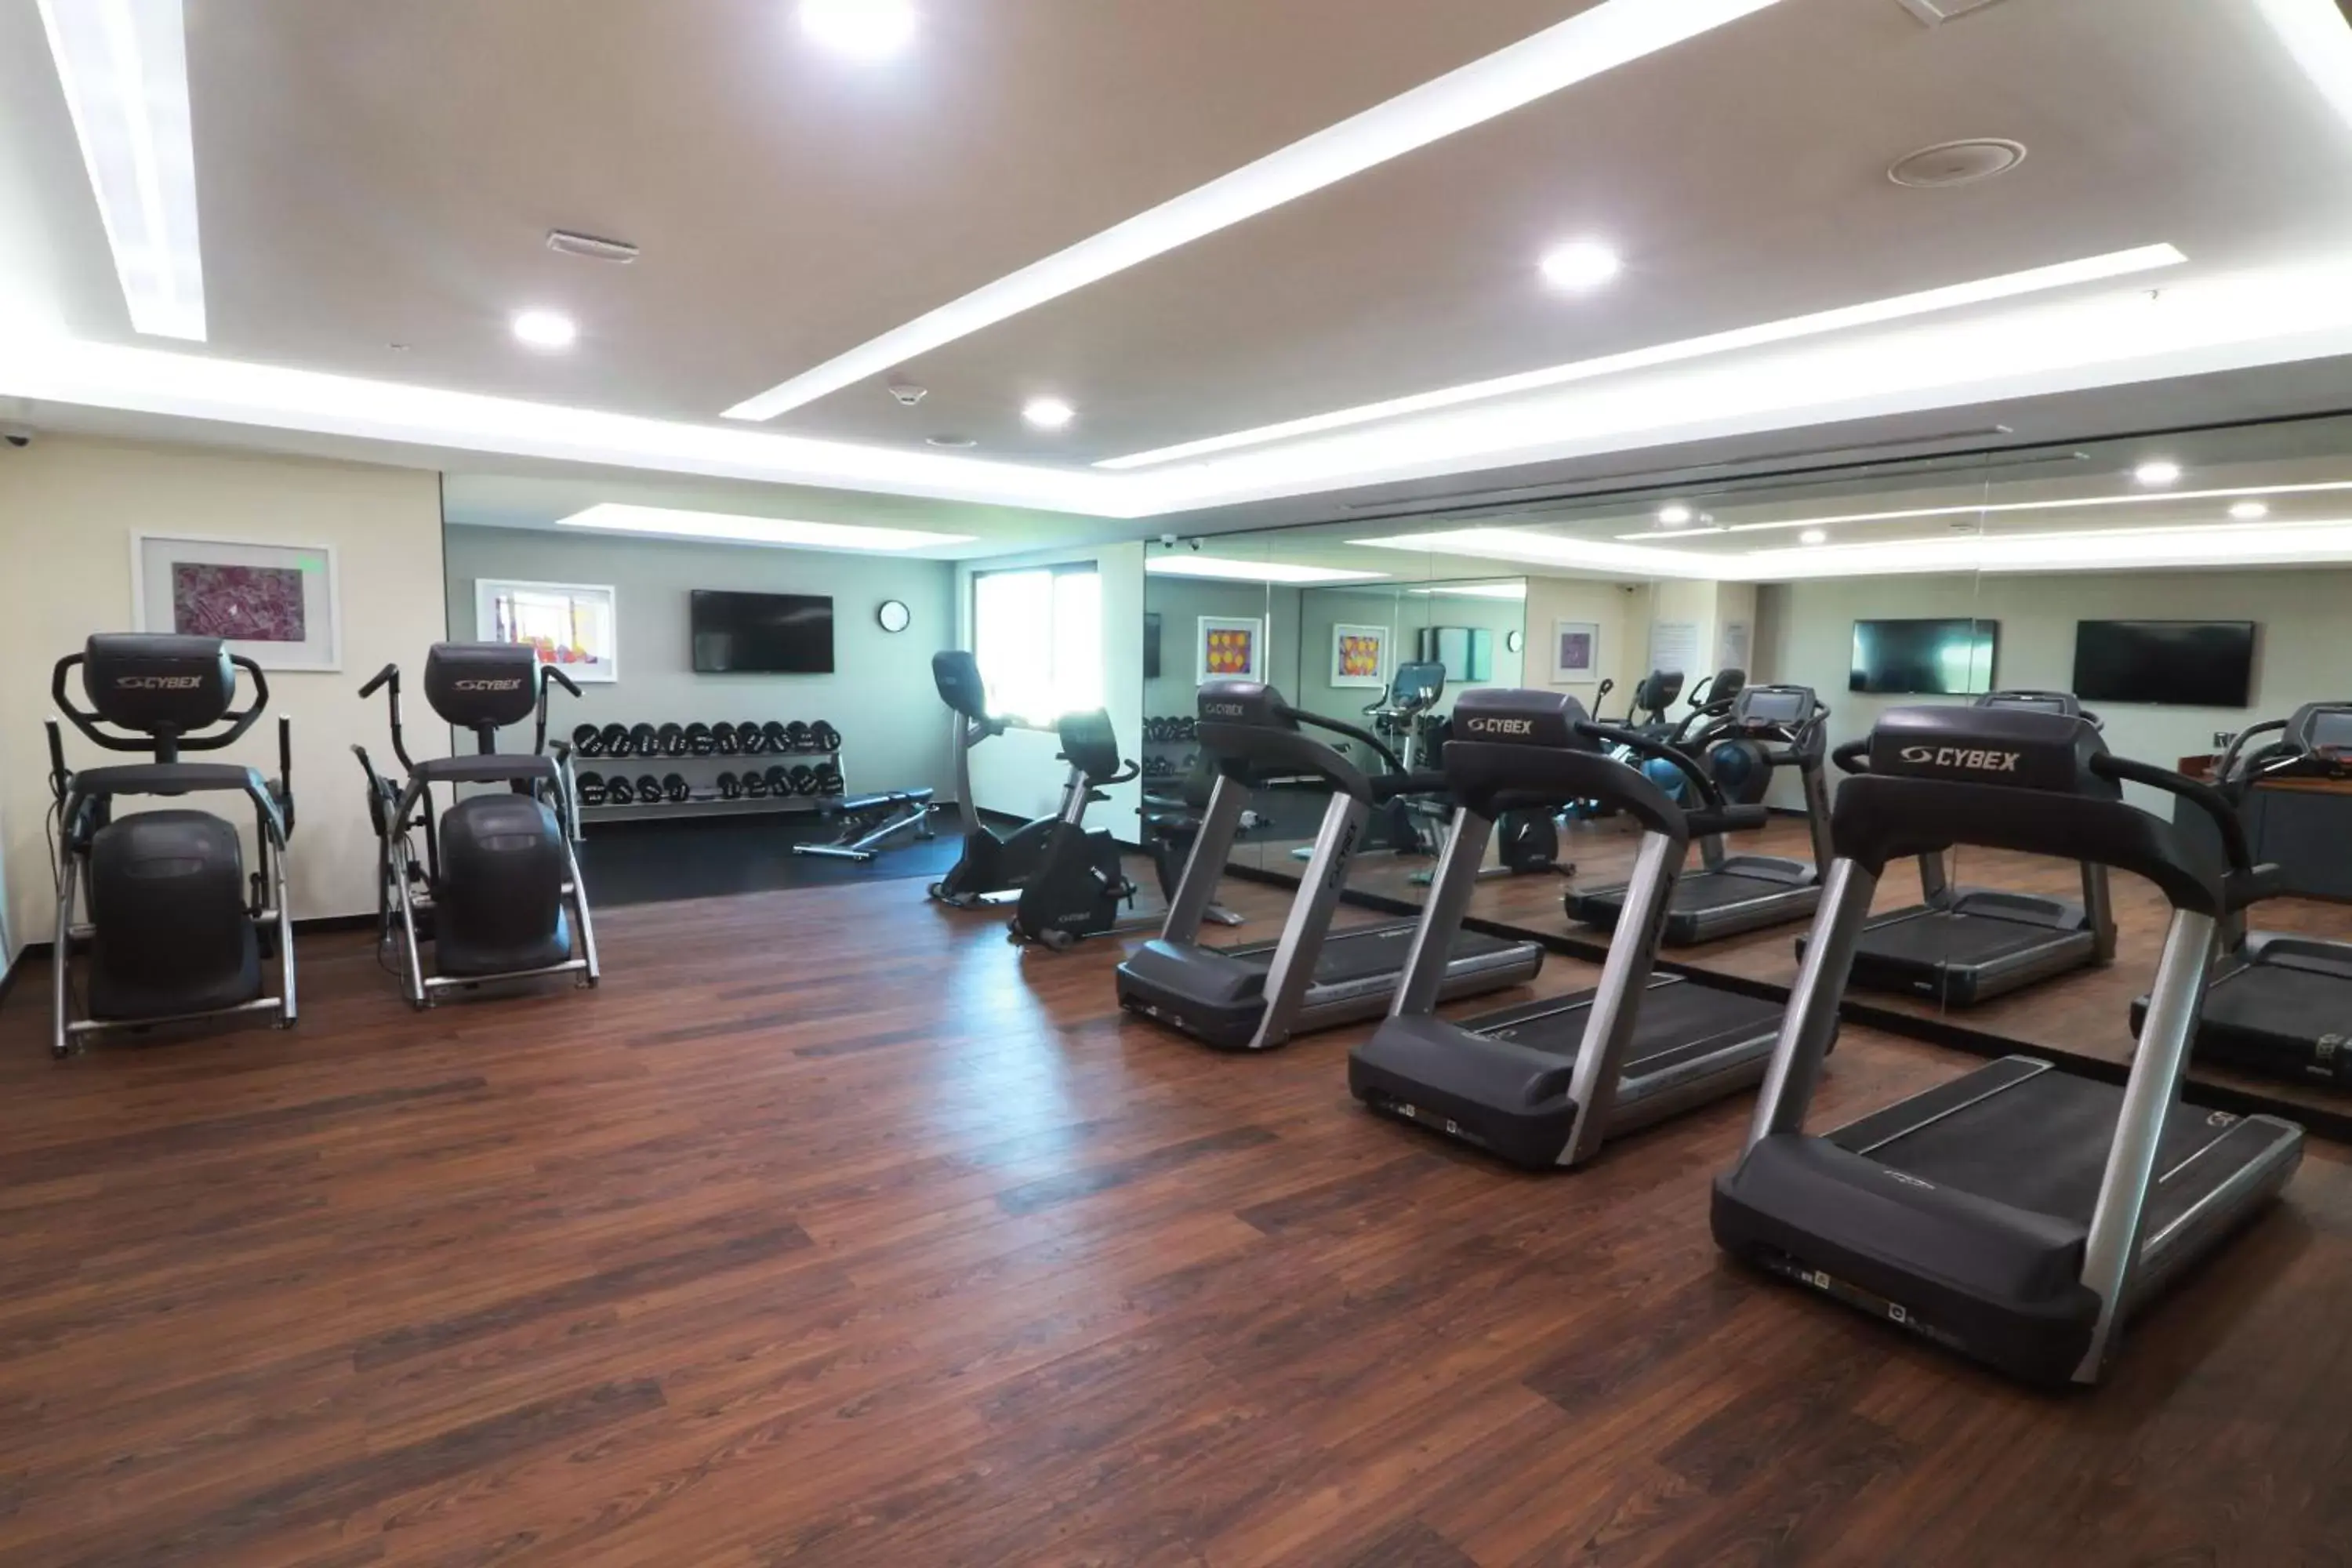 Fitness centre/facilities, Fitness Center/Facilities in Holiday Inn & Suites - Puerto Vallarta Marina & Golf, an IHG Hotel